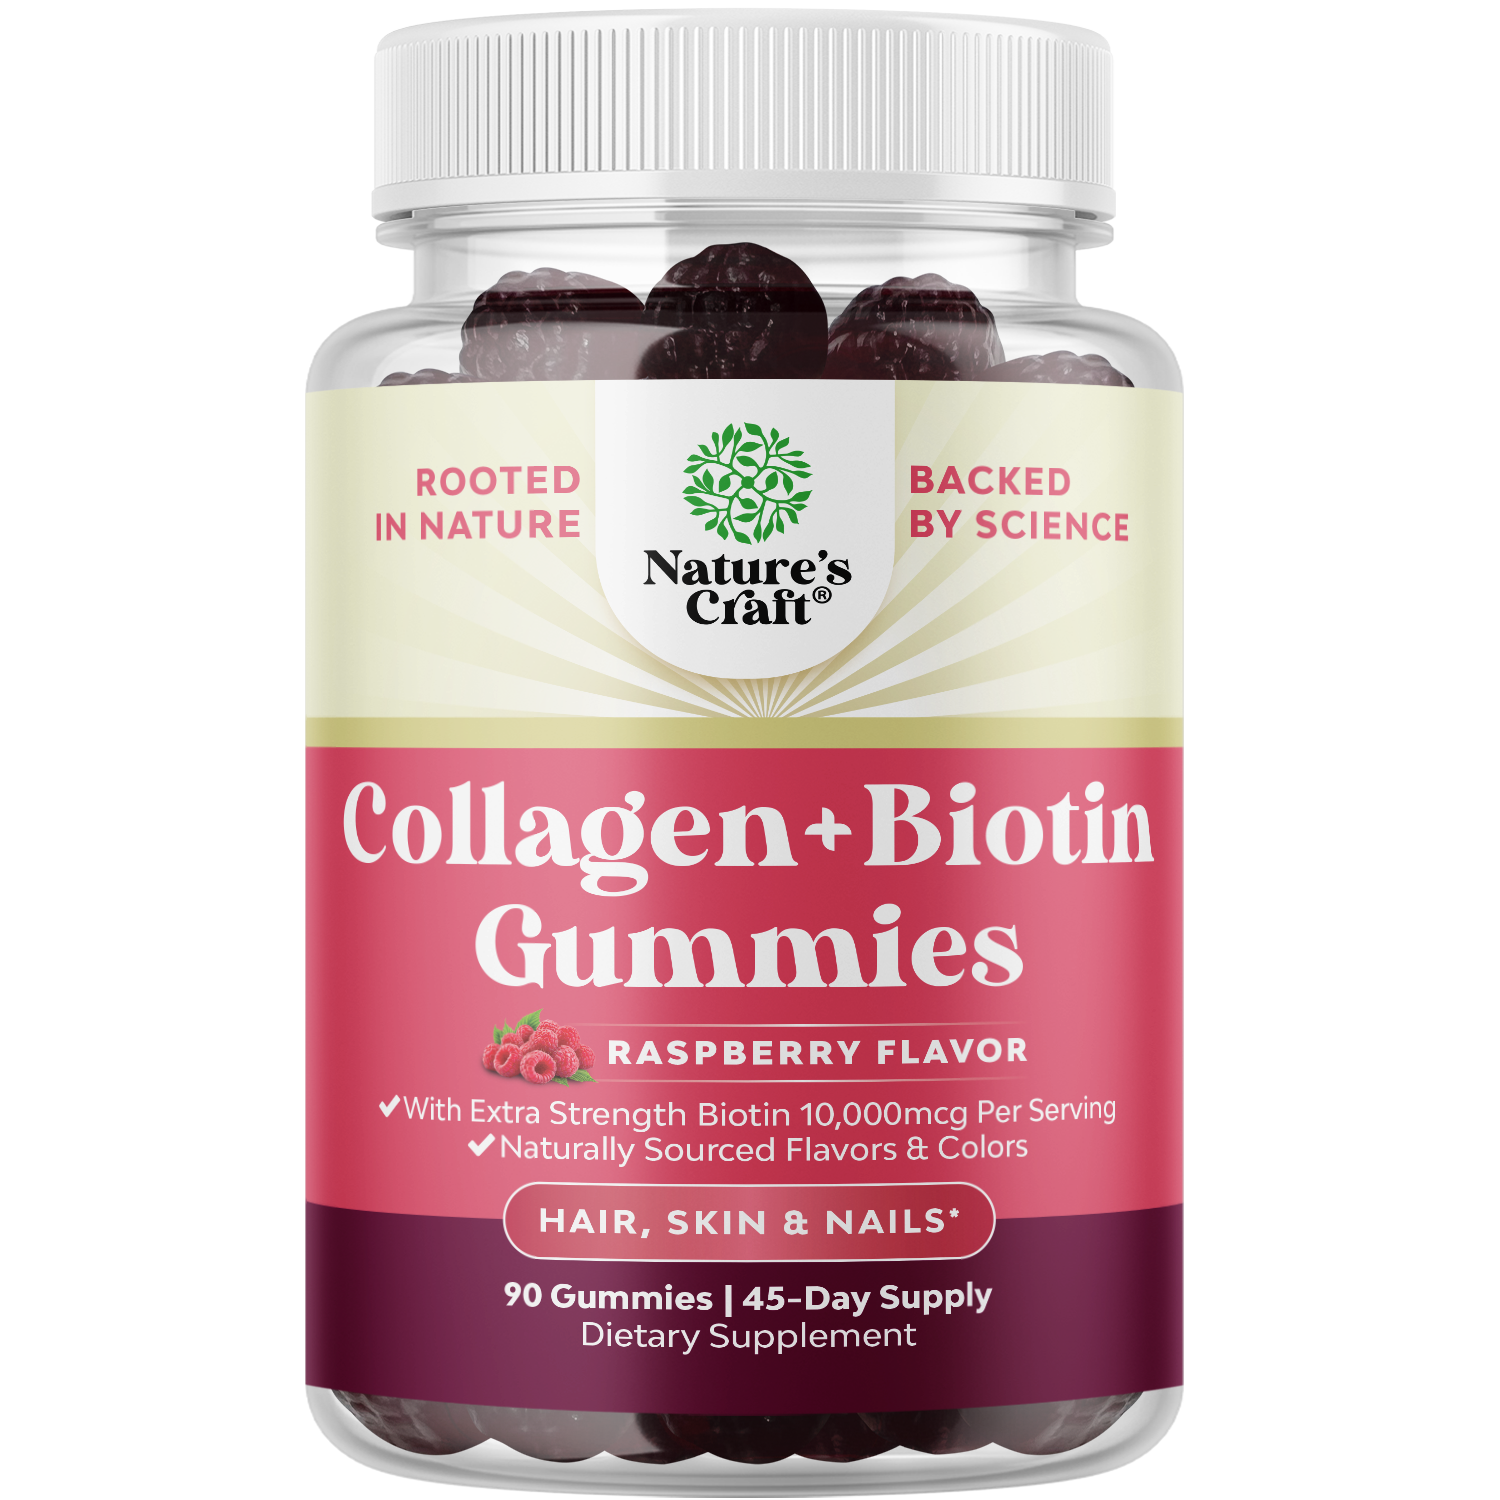 Collagen + Biotin Gummies